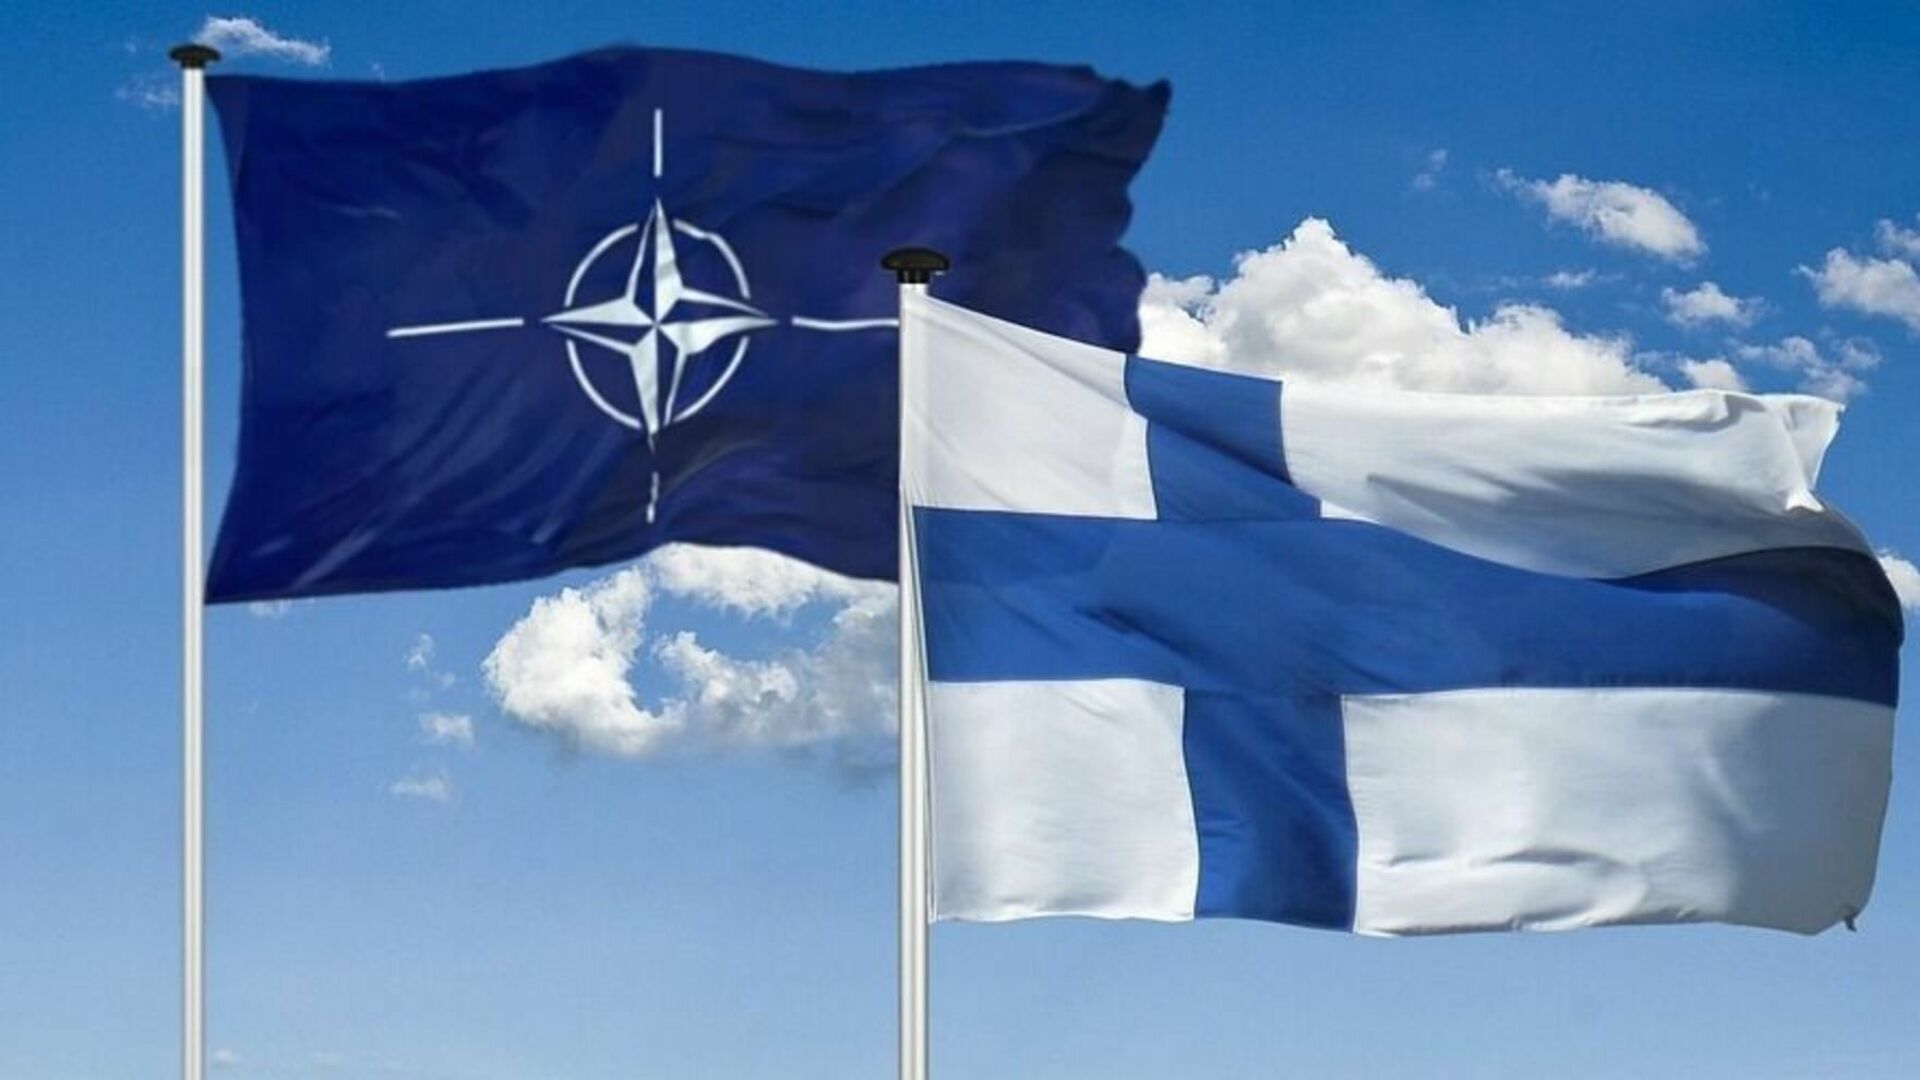 МИД Швеции назвал единоличное членство Финляндии в НАТО «не полным»